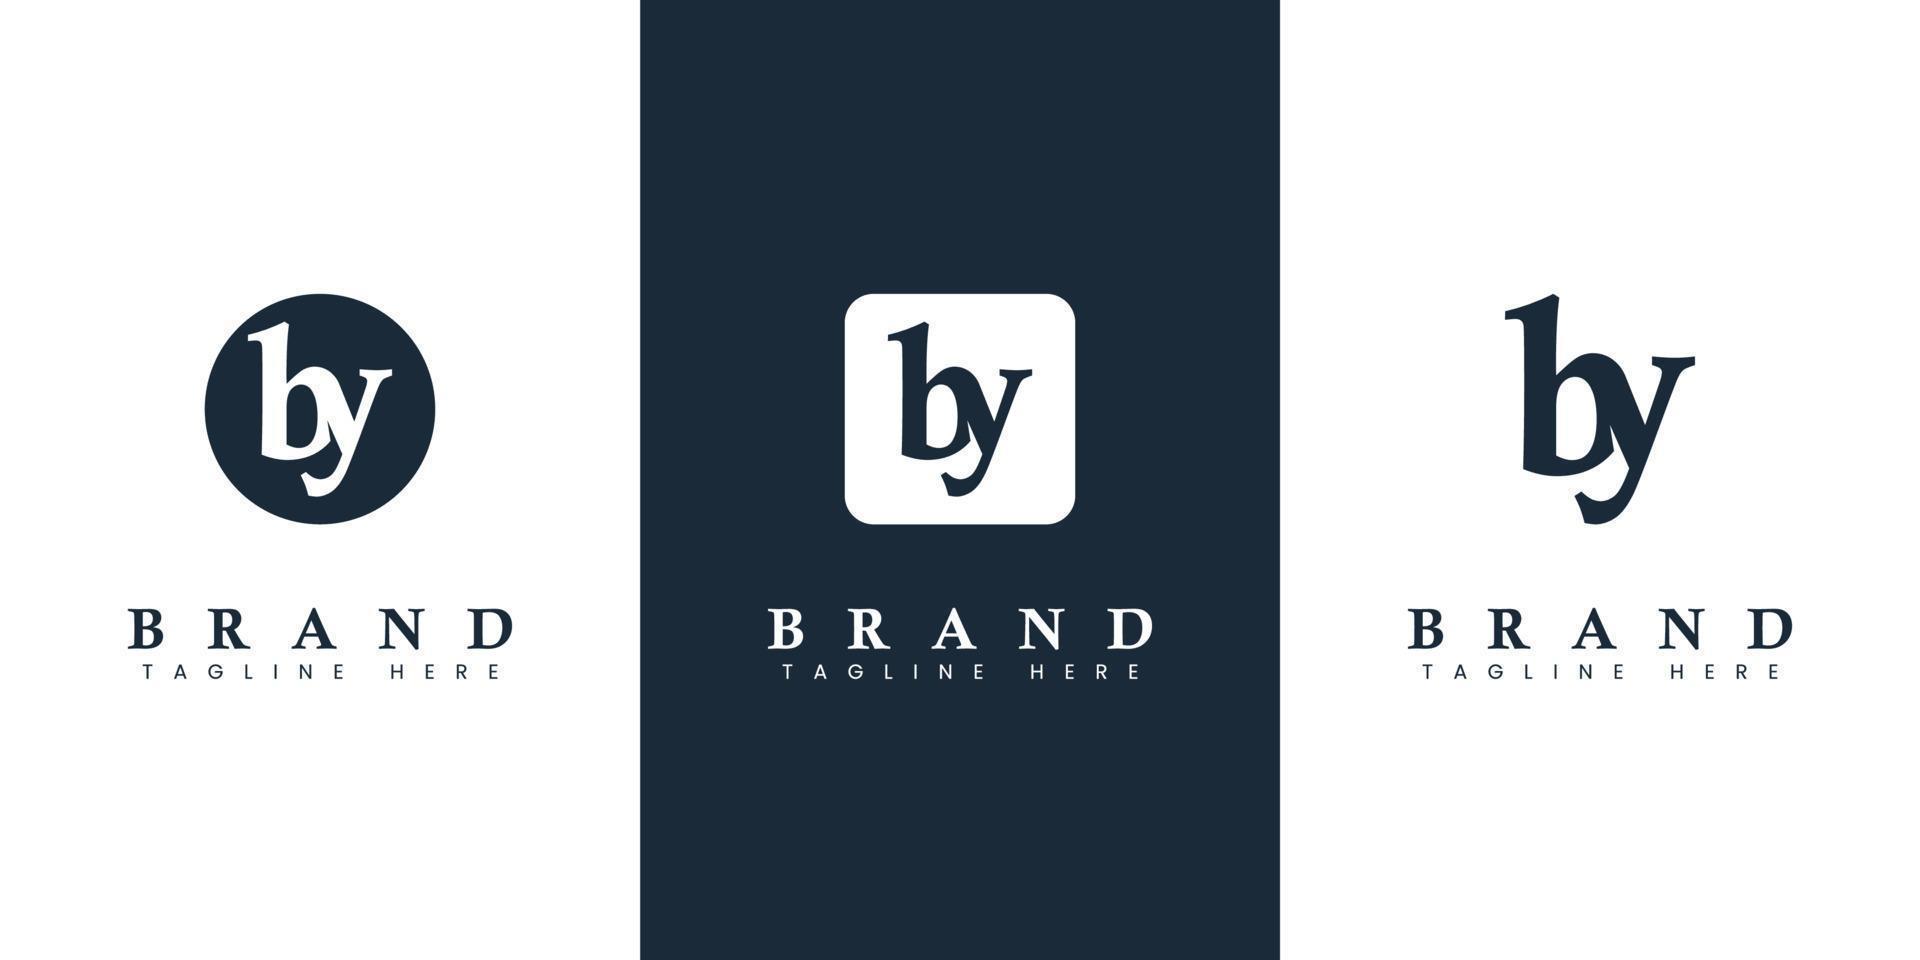 moderno e simples minúsculas de carta logotipo, adequado para qualquer o negócio com de ou yb iniciais. vetor